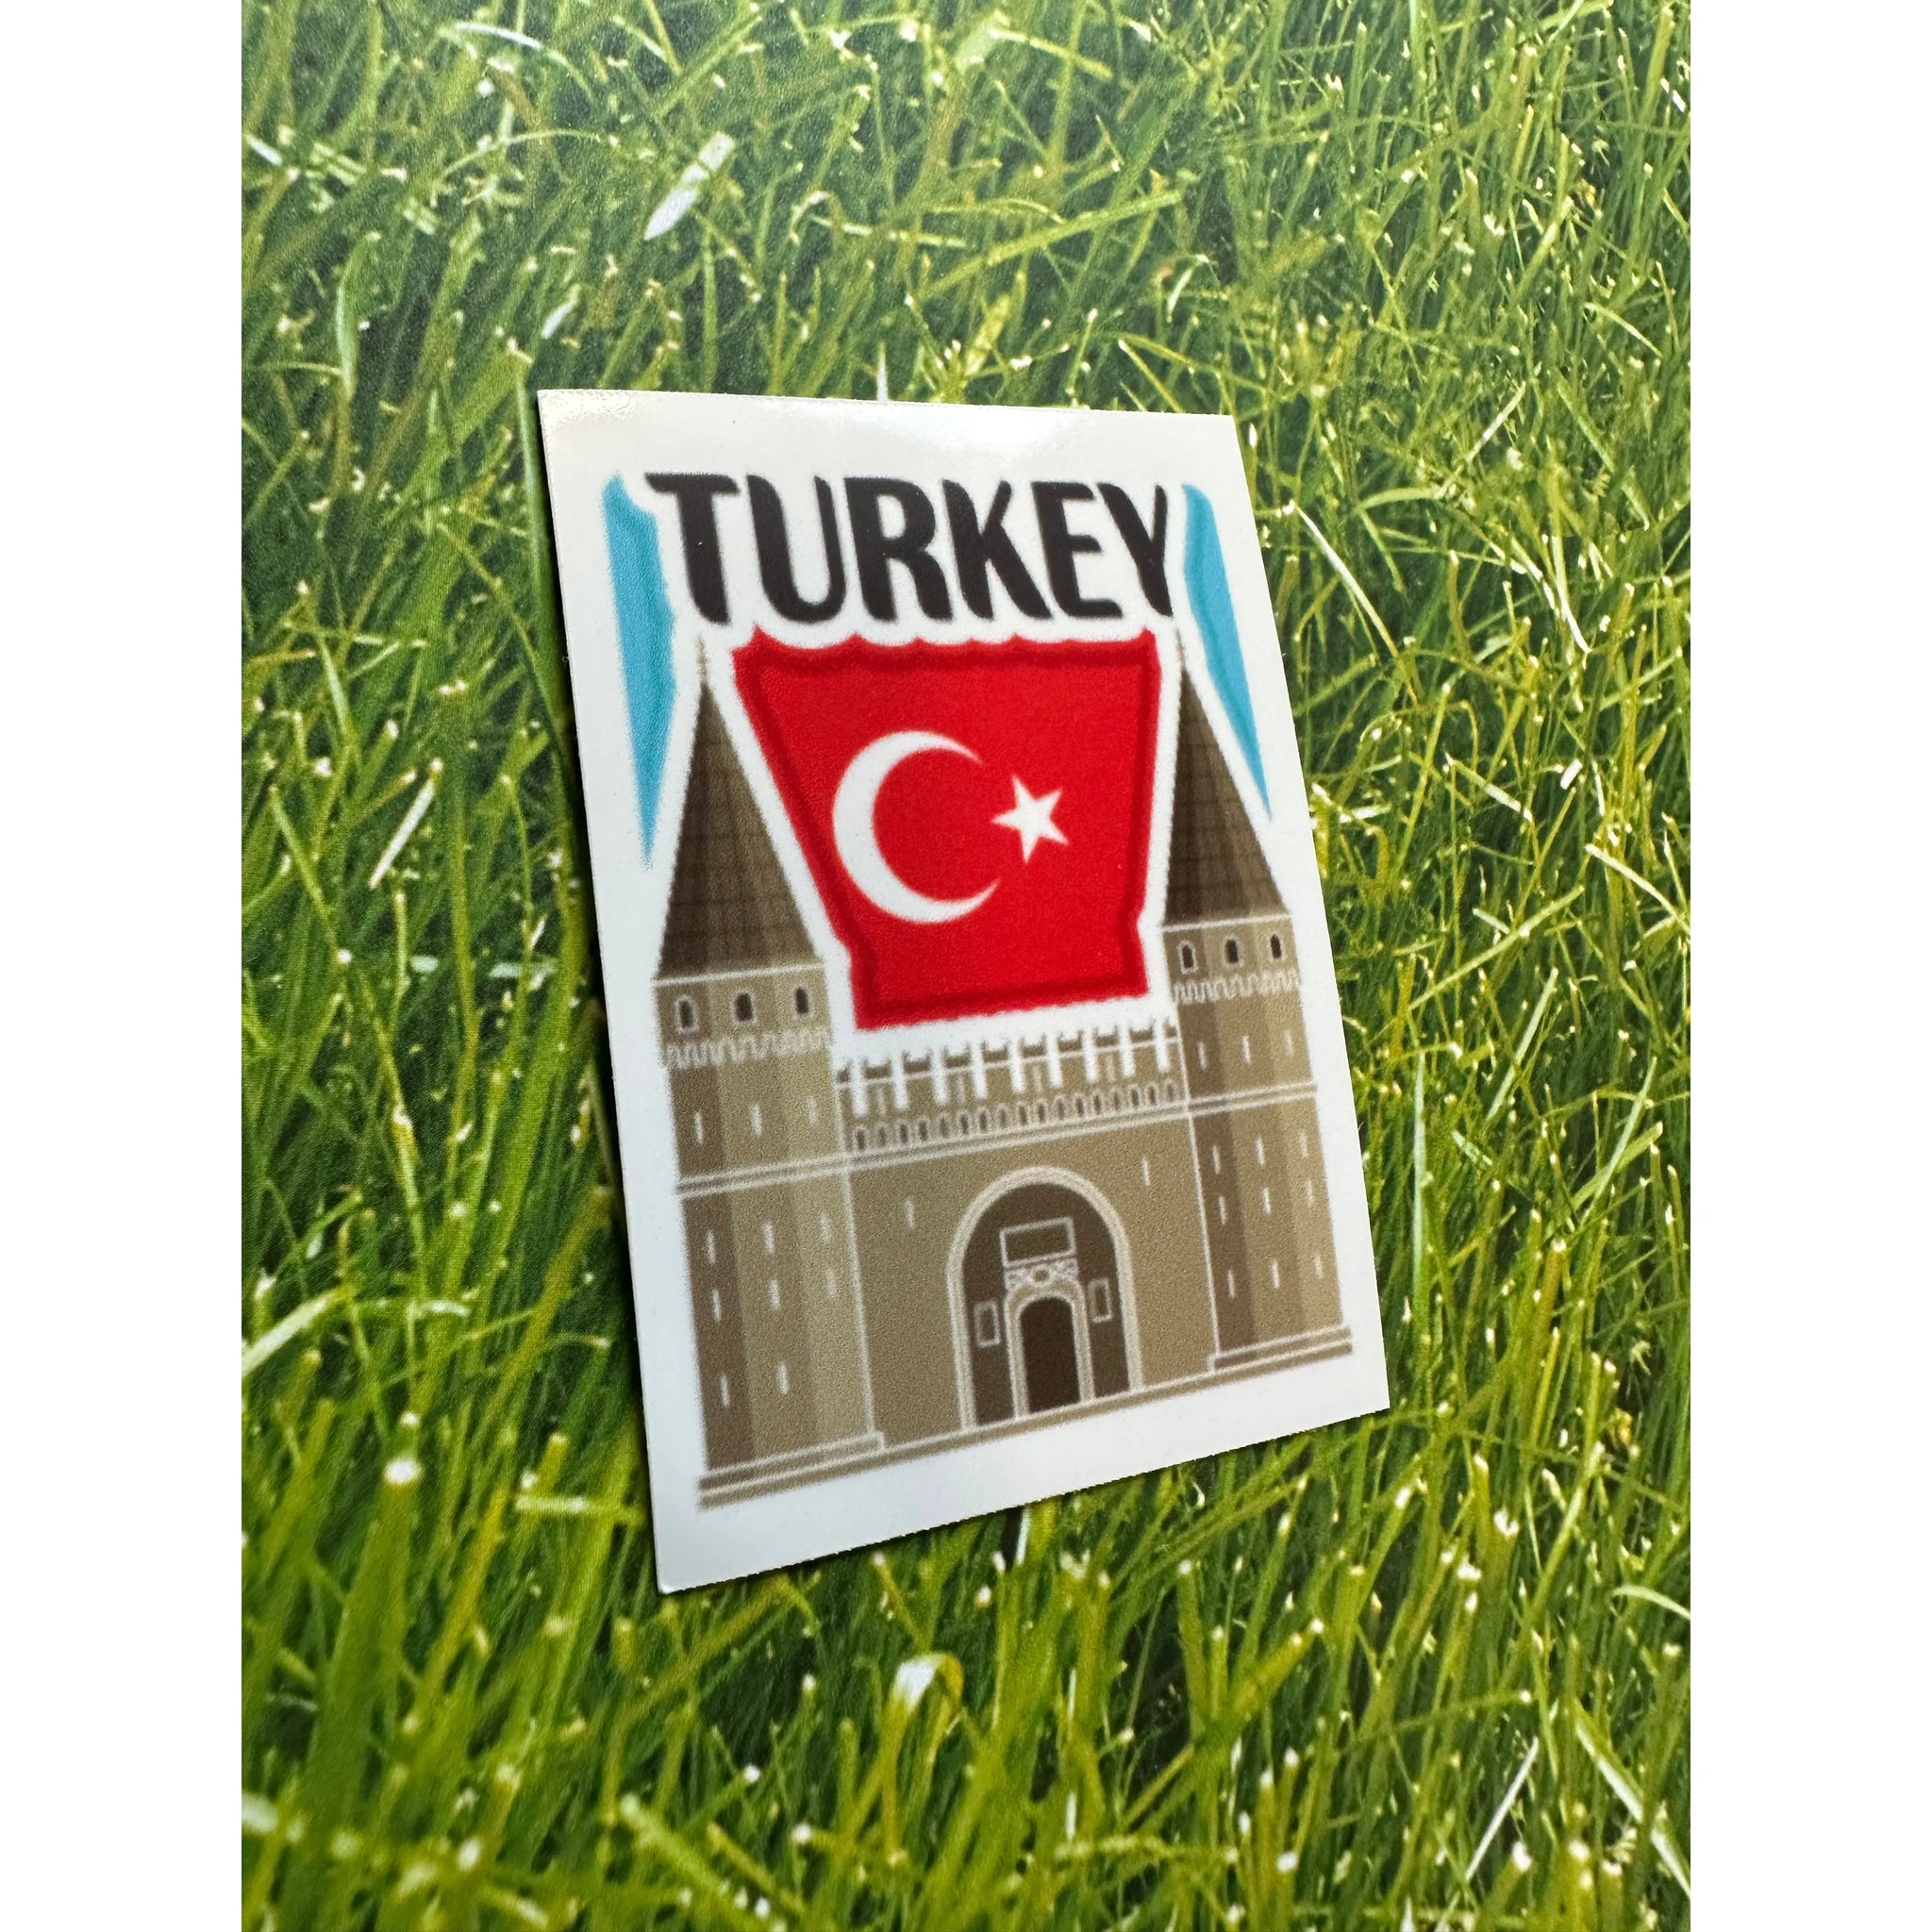 Turkey Vinyl Decal Sticker